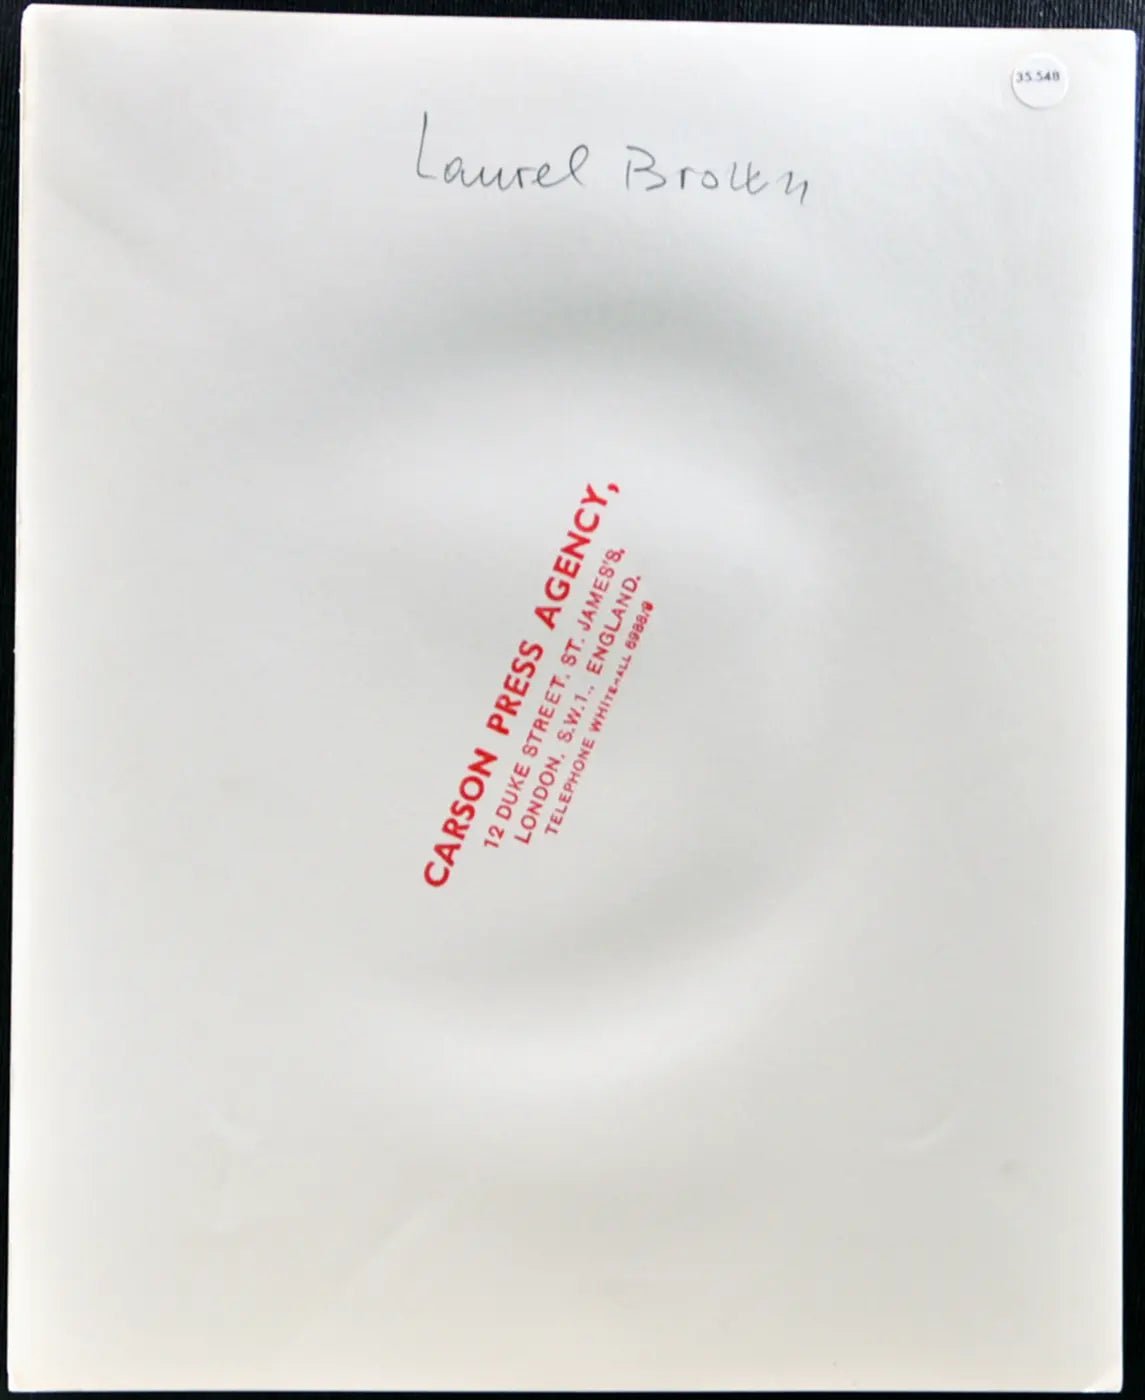 Laurel Brown Modella anni 80 Ft 35548 - Stampa 20x25 cm - Farabola Stampa ai sali d'argento